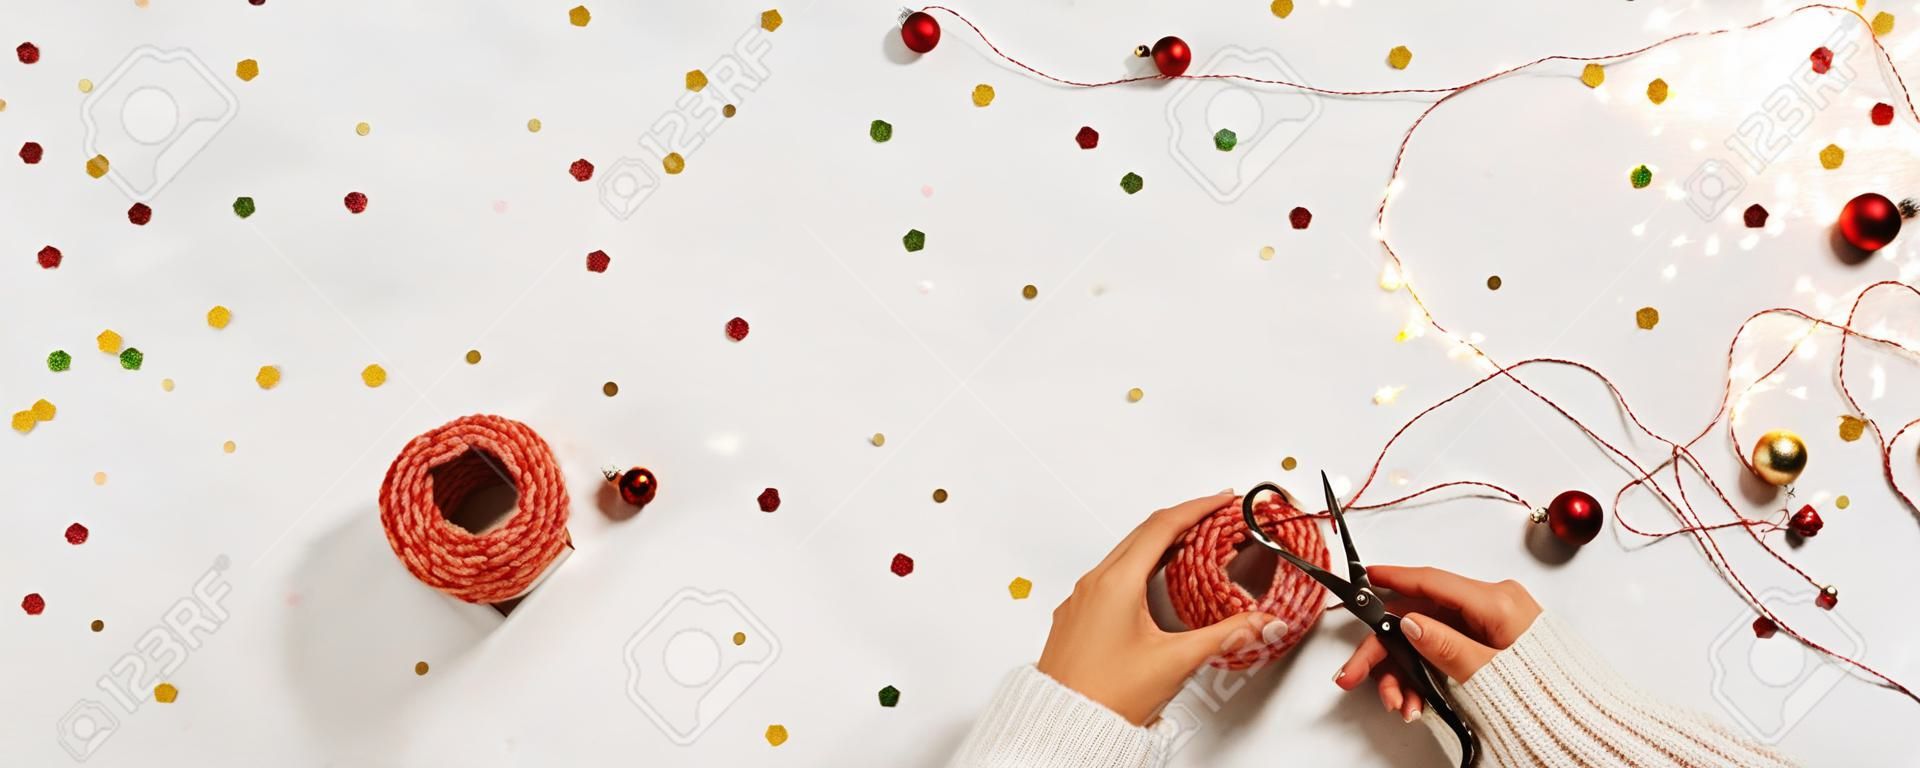 새해를 위한 선물 상자 스웨터 팩에 있는 여성의 손. 흰색 배경에 색종이 조각과 텍스트를 위한 공간이 있는 창의적인 크리스마스 레이아웃입니다.